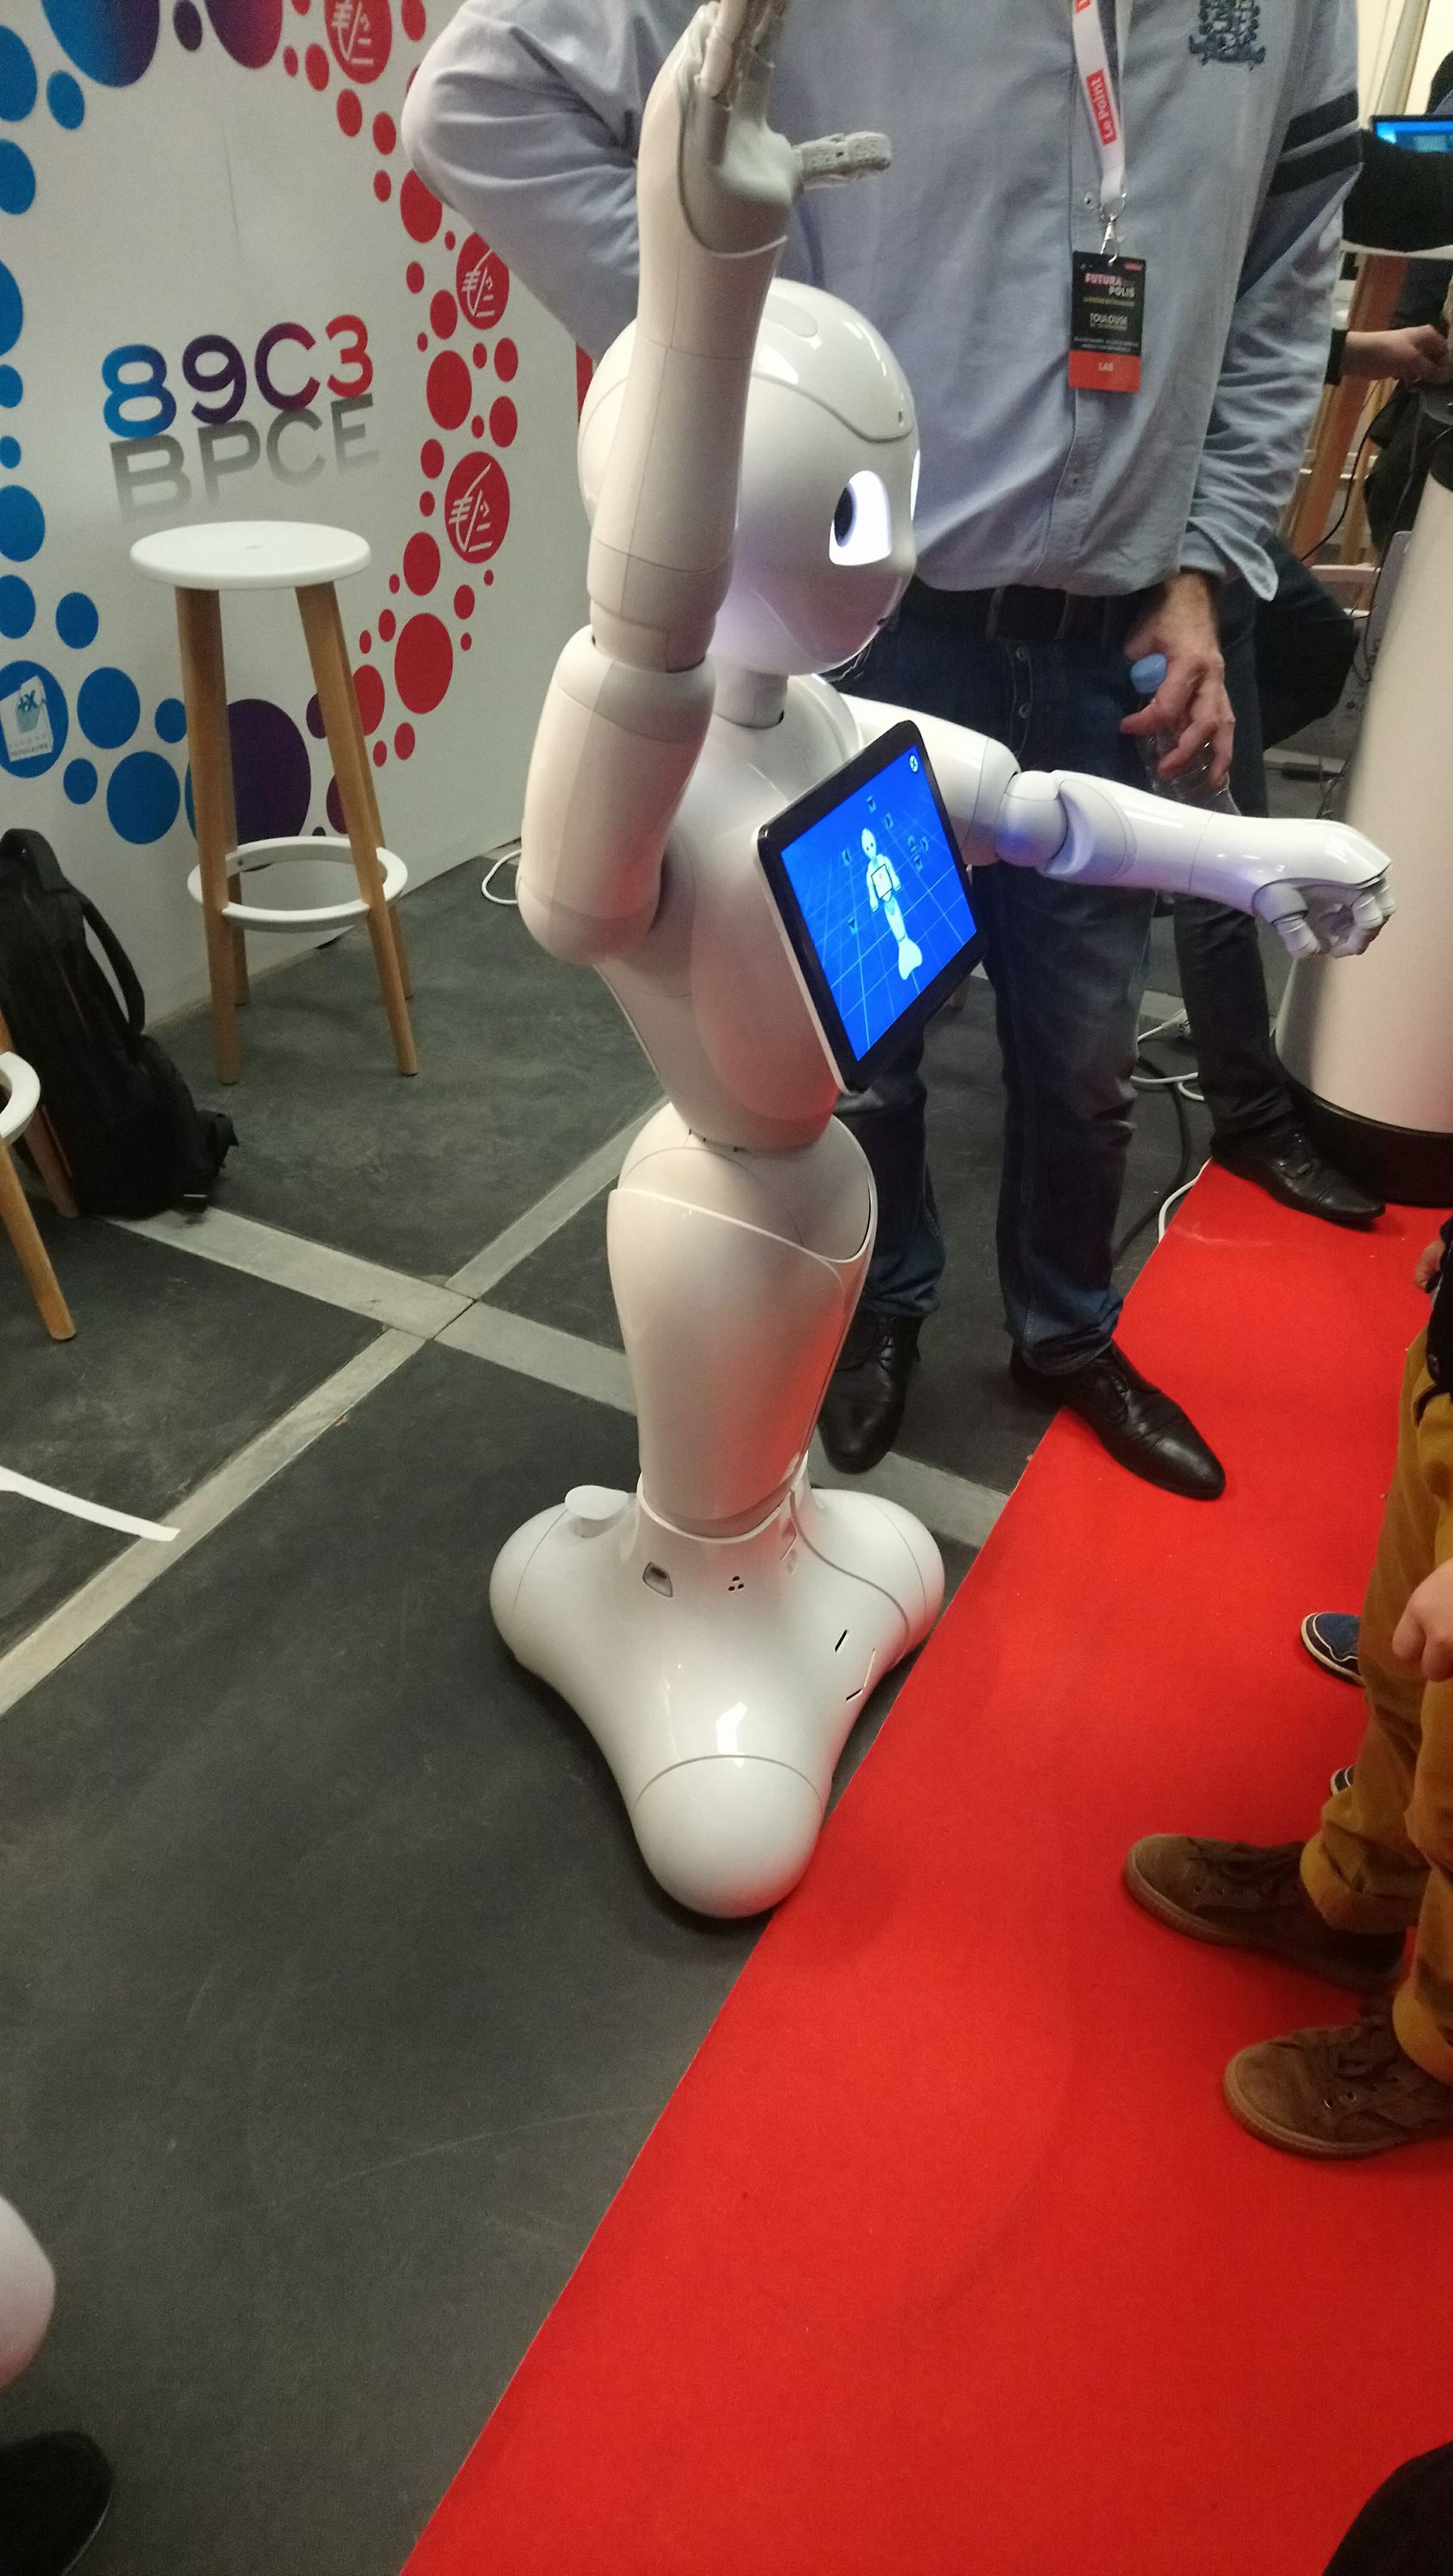 Un robot qui parle et qui bouge, des enfants fascinés - Le lab Futurapolis